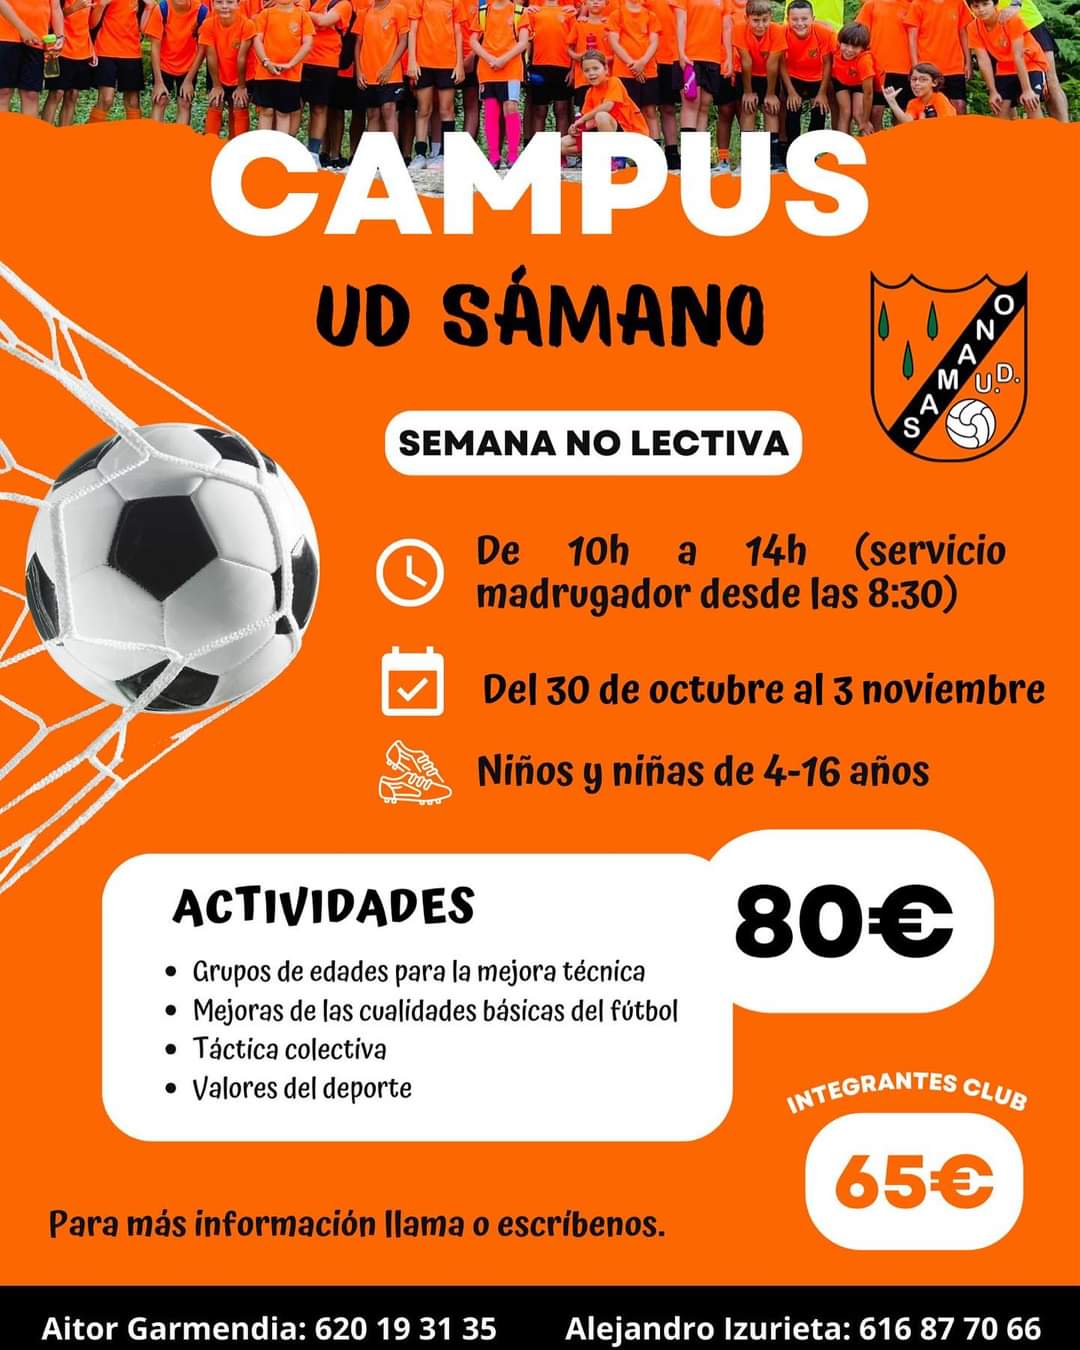 Campus UD Sámano